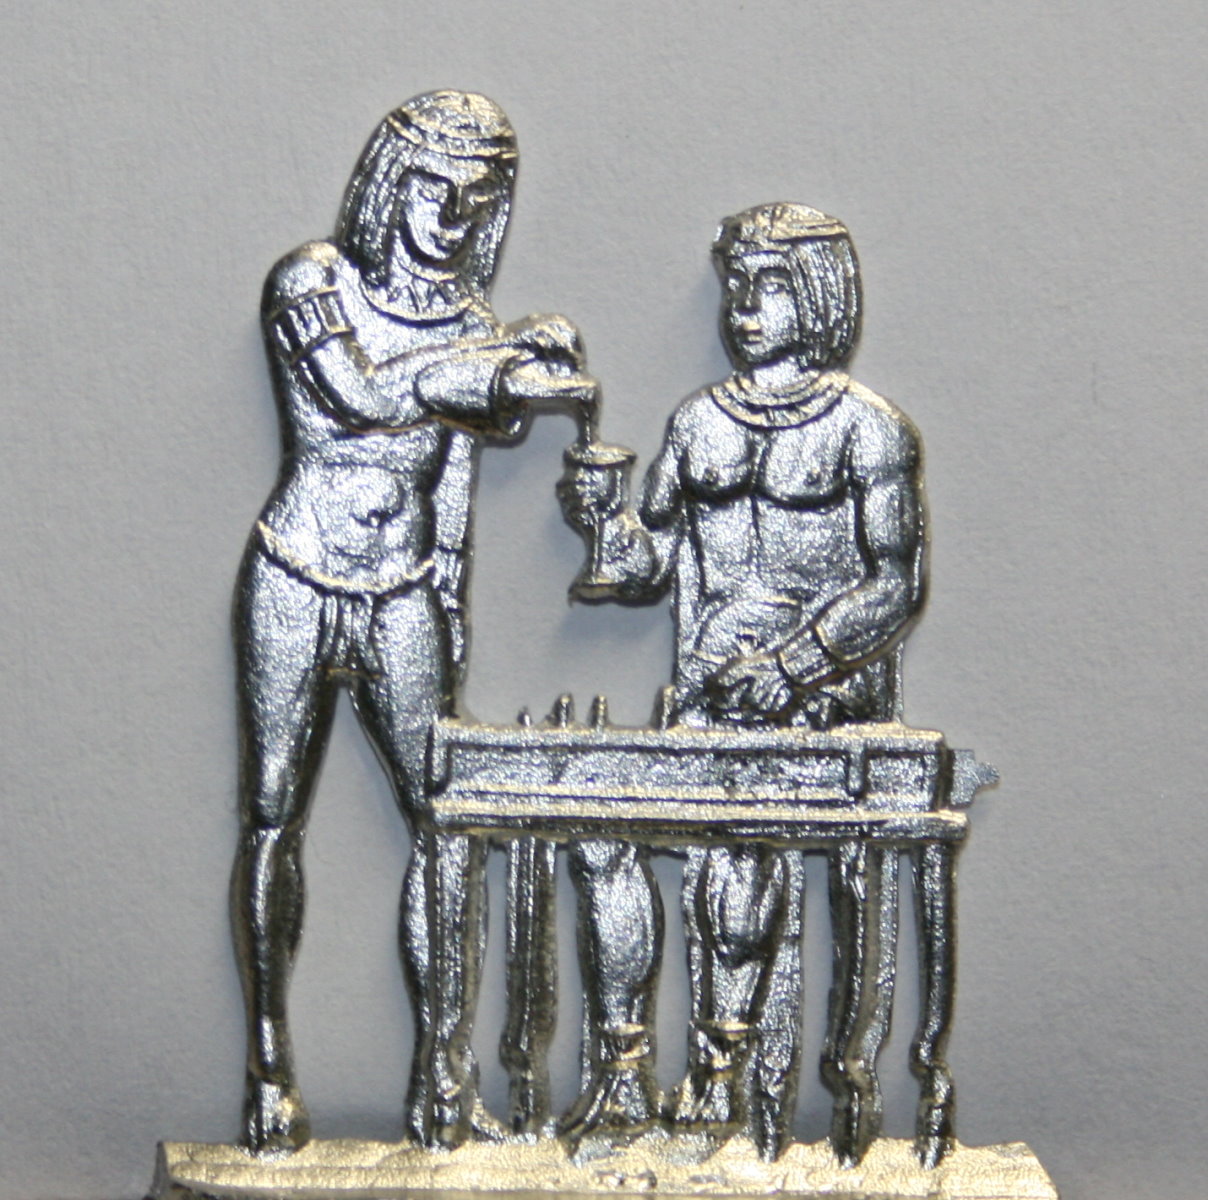 Der Pharao mit seiner Lieblingsfrau beim Brettspiel 1800-500 v.Ch.